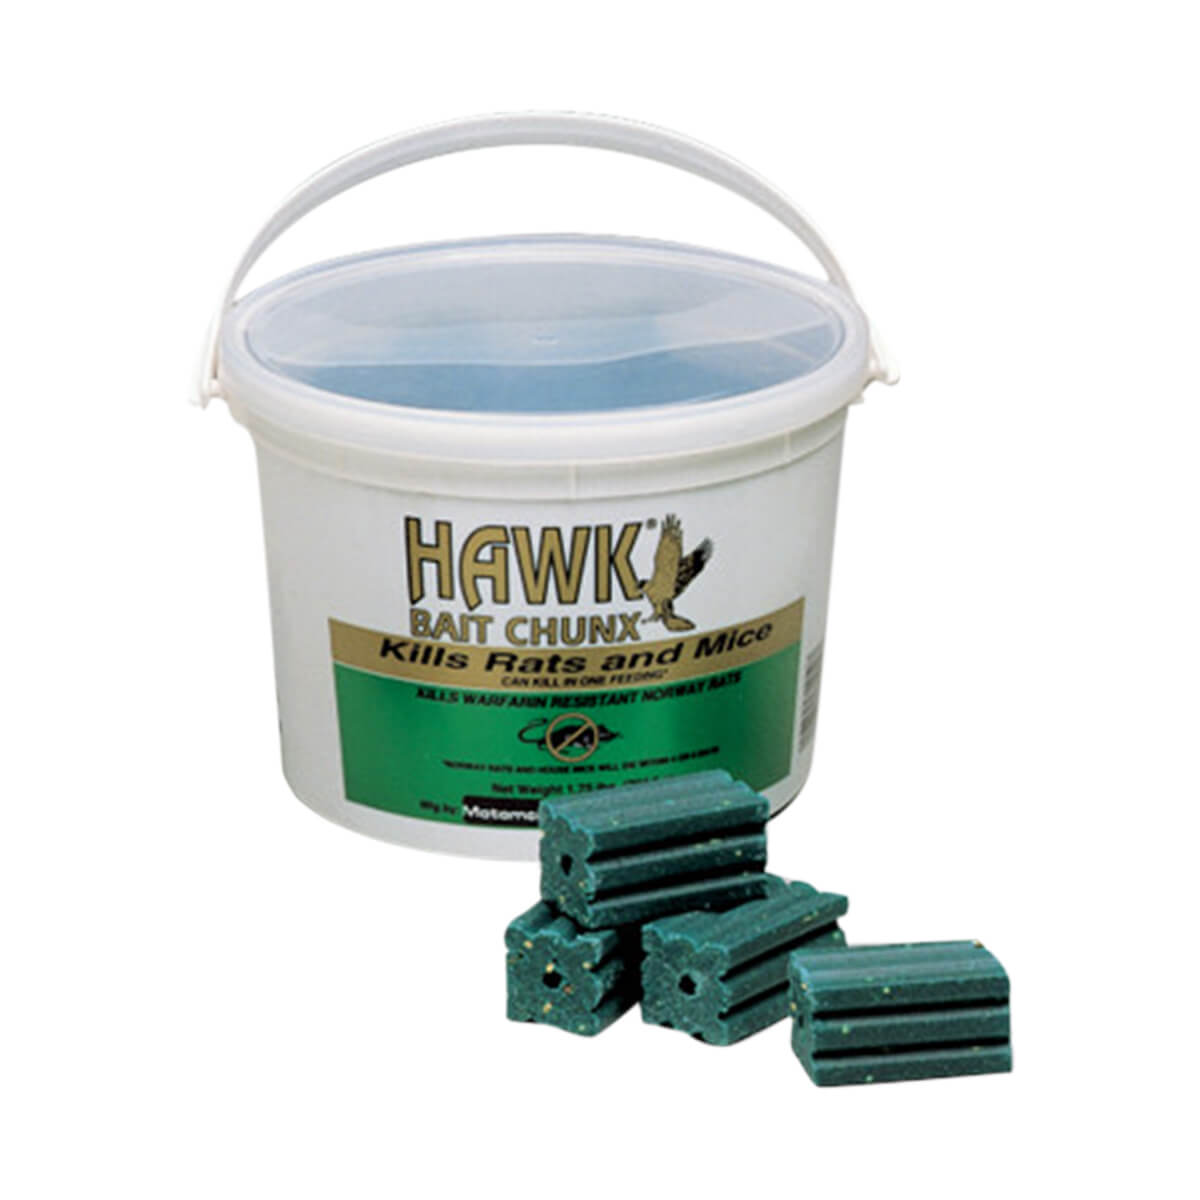 Hawk Bait Chunx - 10 ounce pack